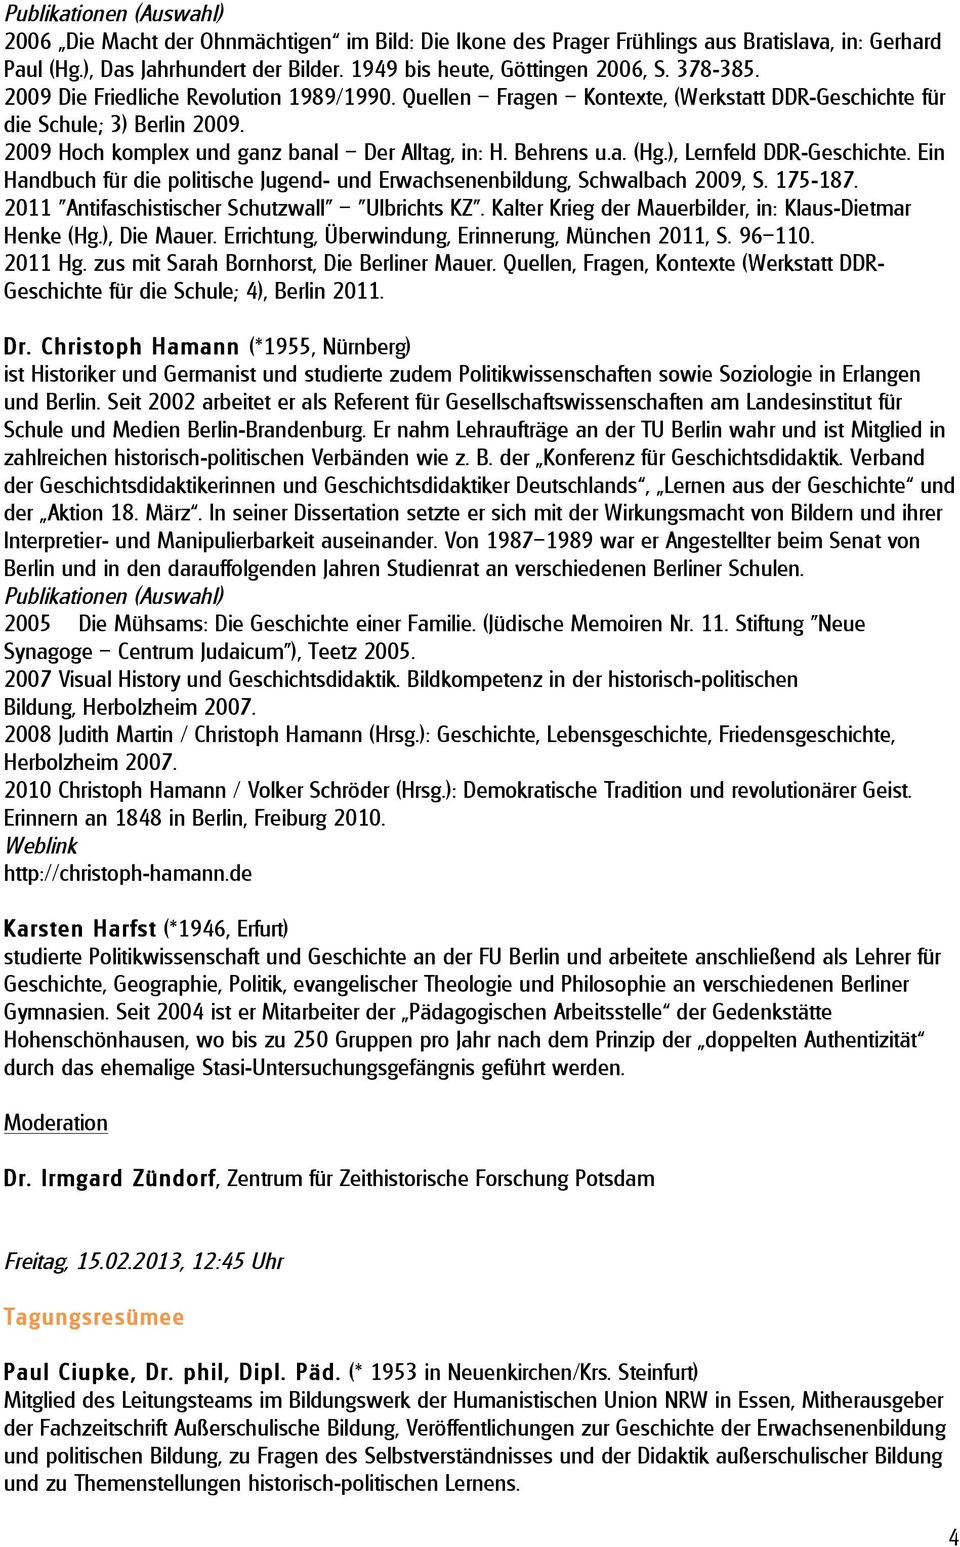 ), Lernfeld DDR-Geschichte. Ein Handbuch für die politische Jugend- und Erwachsenenbildung, Schwalbach 2009, S. 175-187. 2011 "Antifaschistischer Schutzwall" "Ulbrichts KZ".